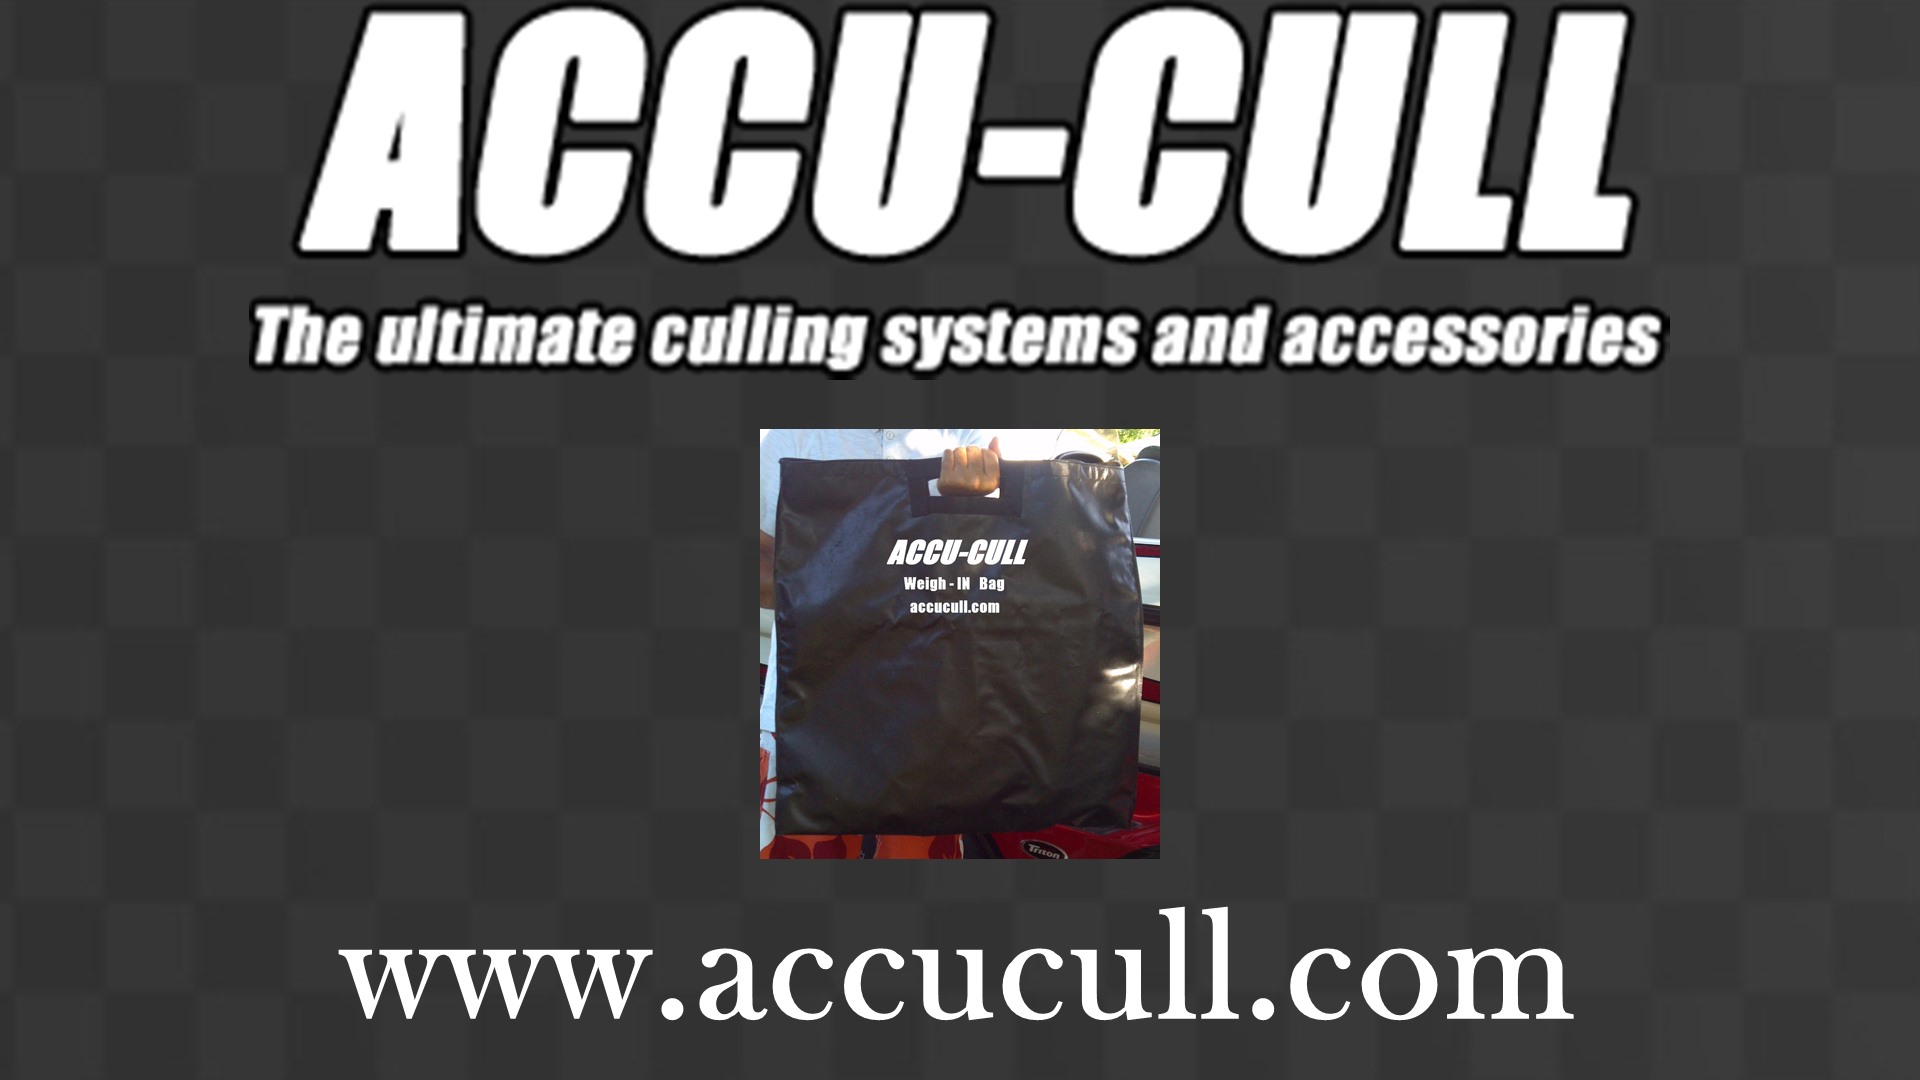 Accu-Cull